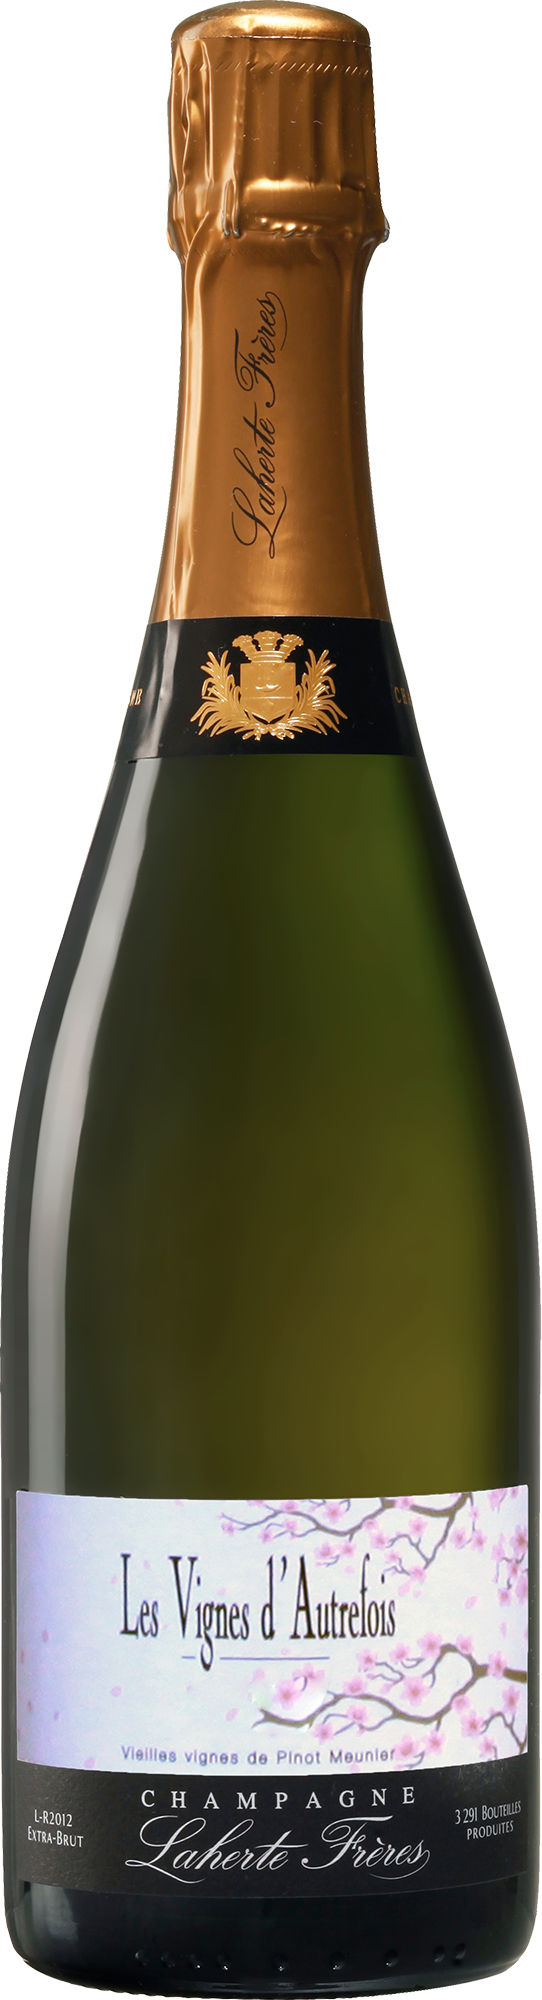 Champagne Laherte Frères Les Vignes d'Autrefois 2018 (Disg. Dec 2021)